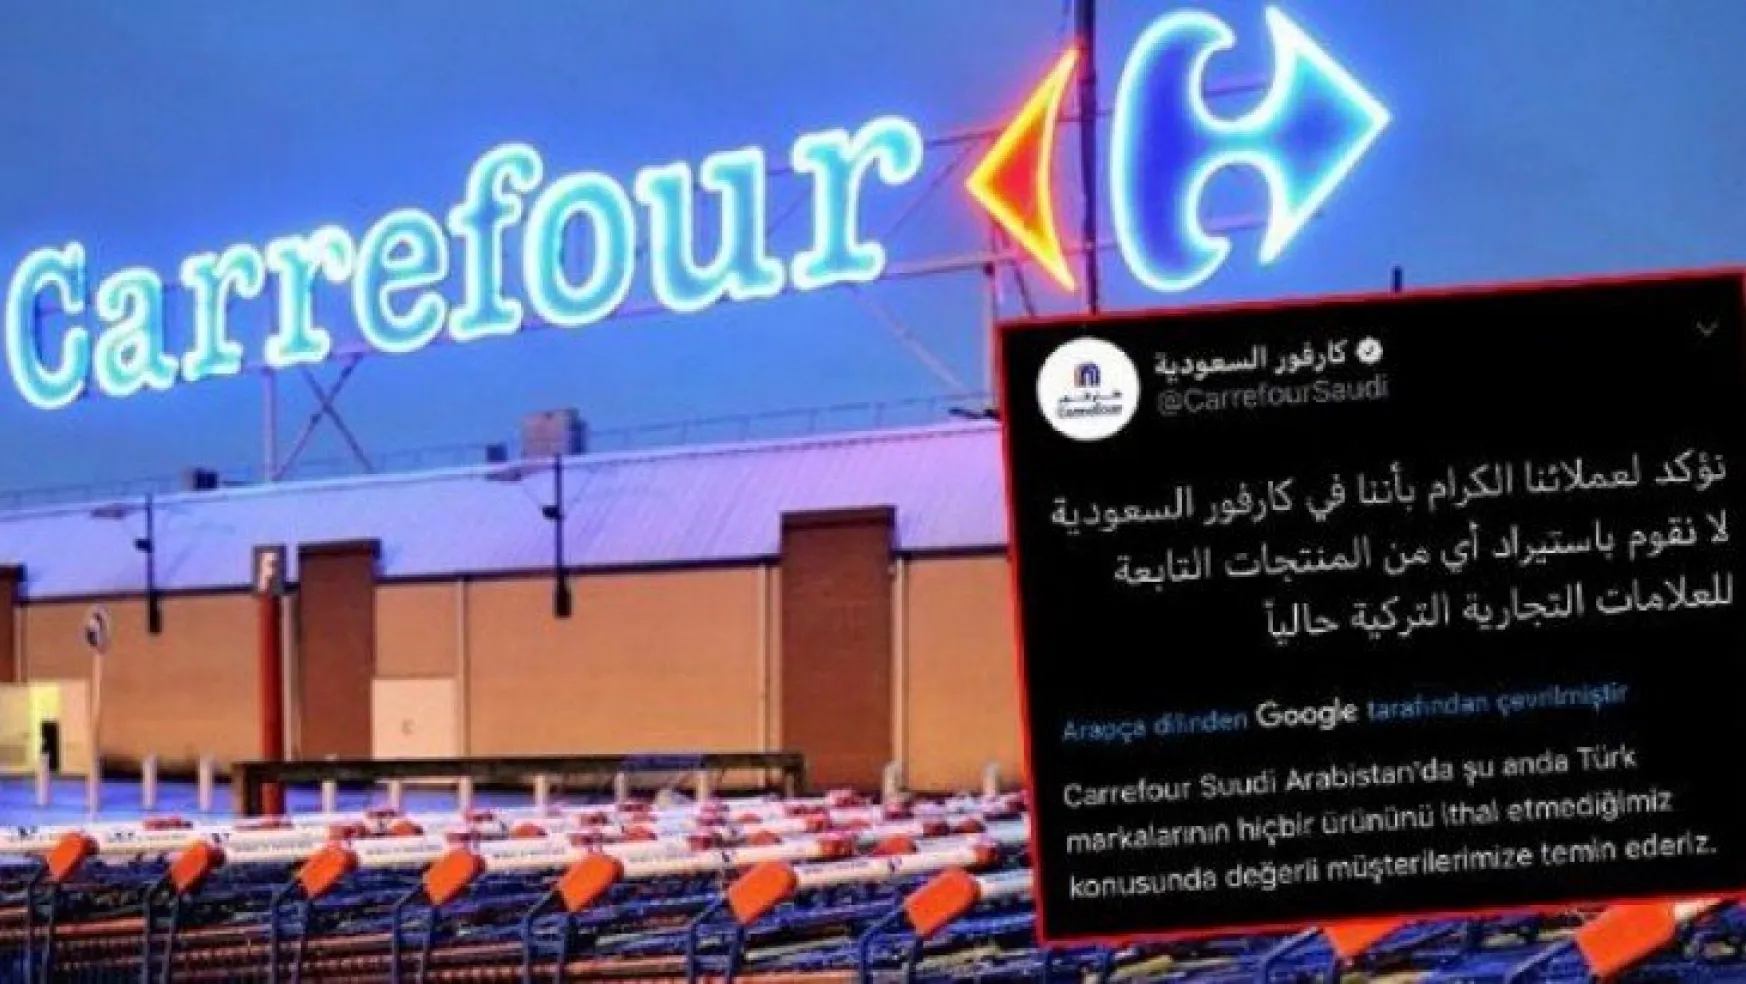 'Türk ürünlerini satmıyoruz' açıklaması yapan Carrefour'a büyük tepki!